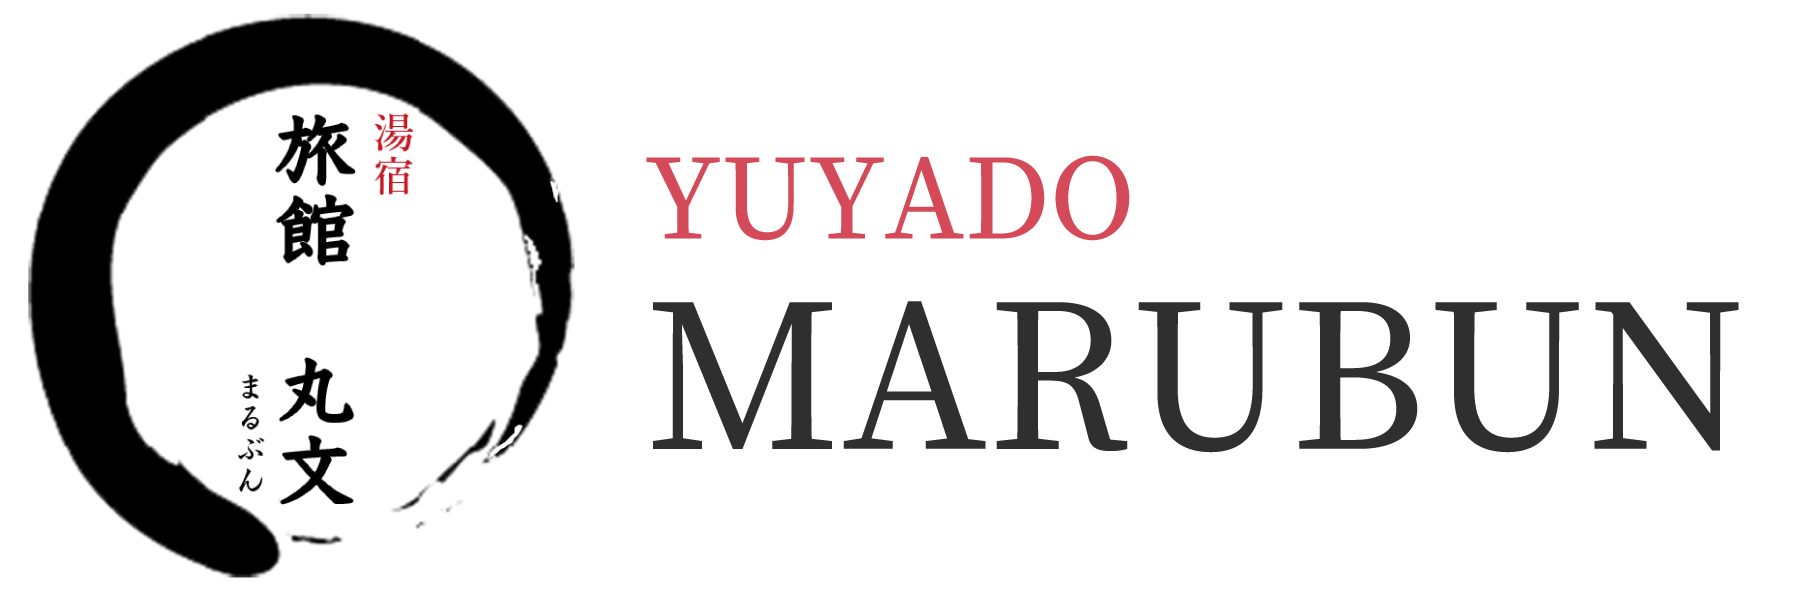 Yuyado-Marubu